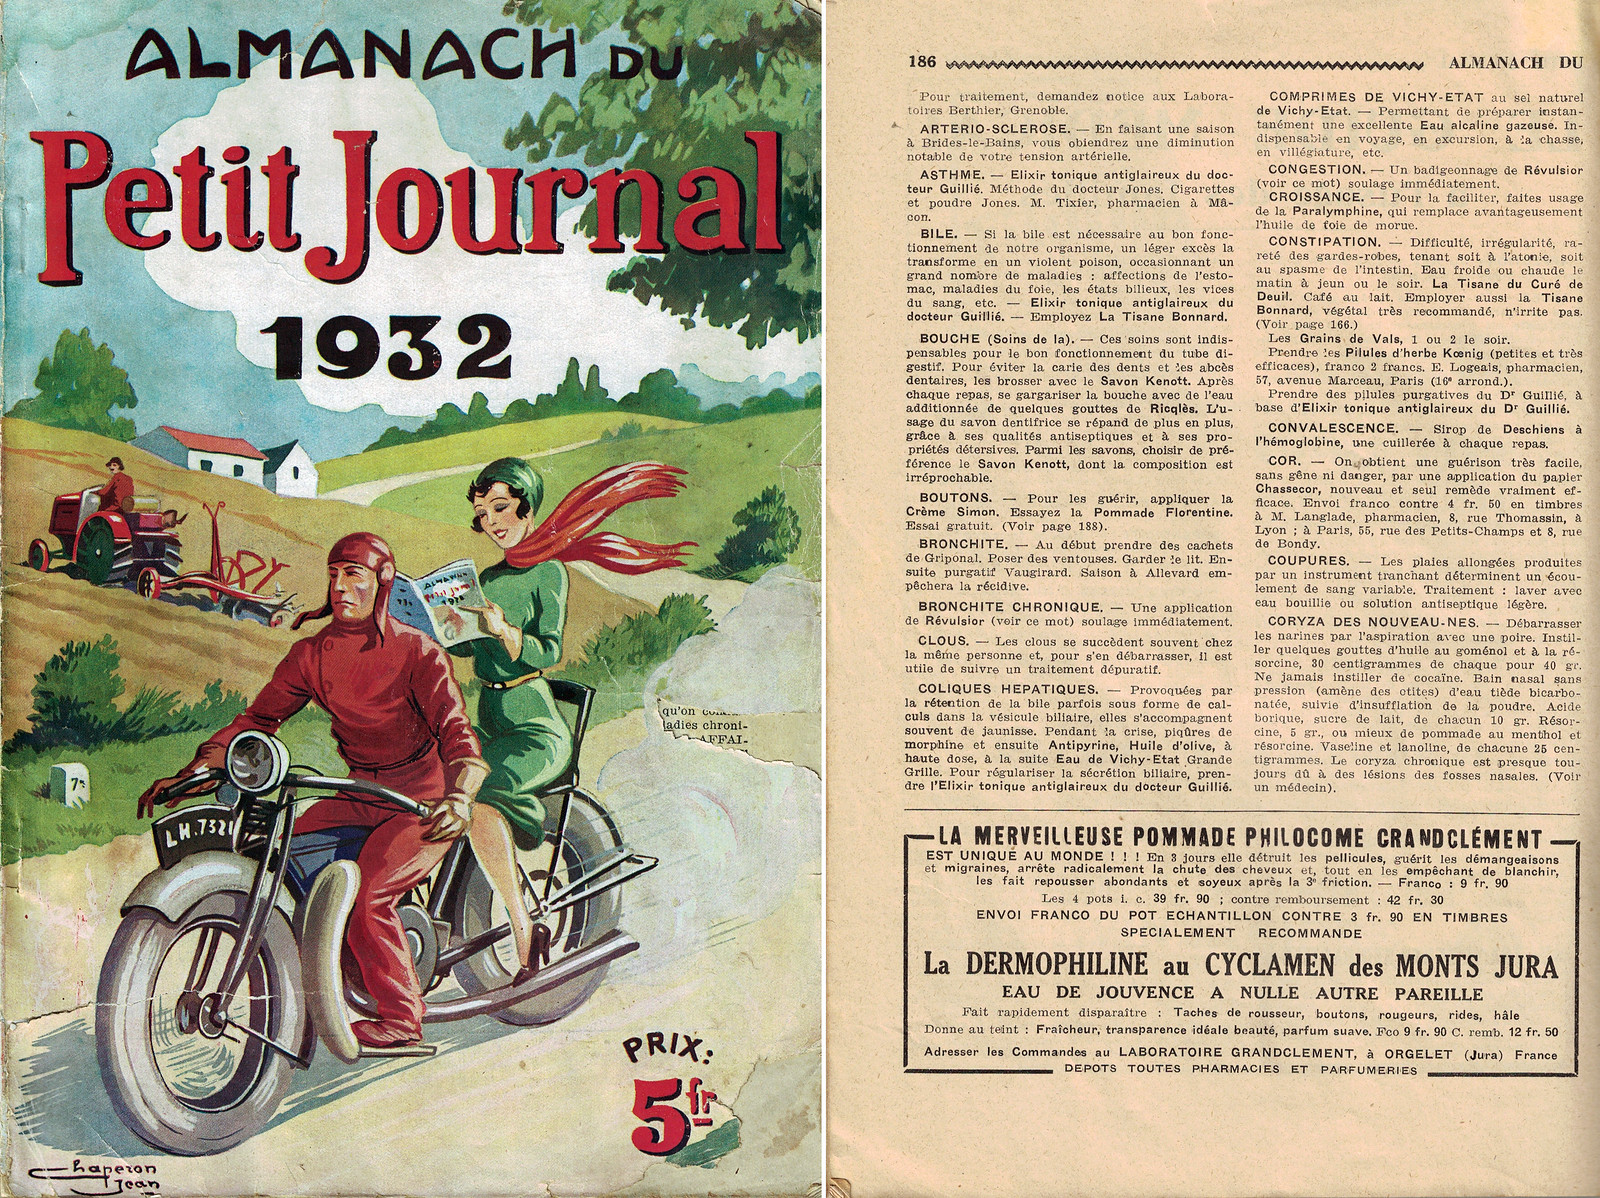 Publicité pour la pommade Philocome du laboratoire Grandclément, dans l'Almanach 1932 du Petit Journal